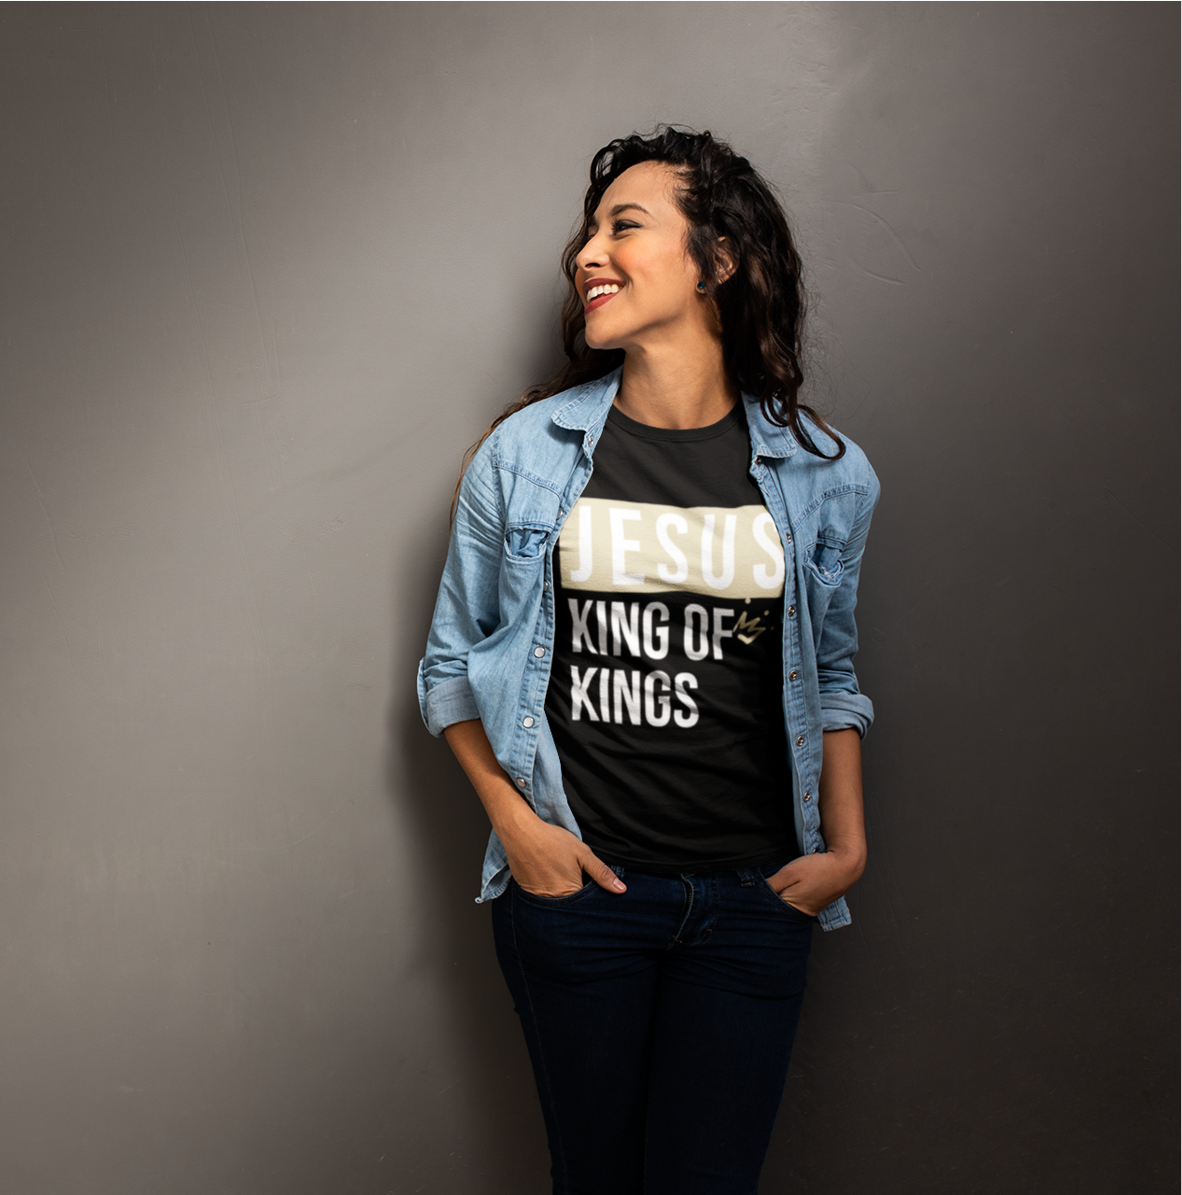 Jesus King of Kings Short-Sleeve Unisex T-Shirt - DFTK Designs